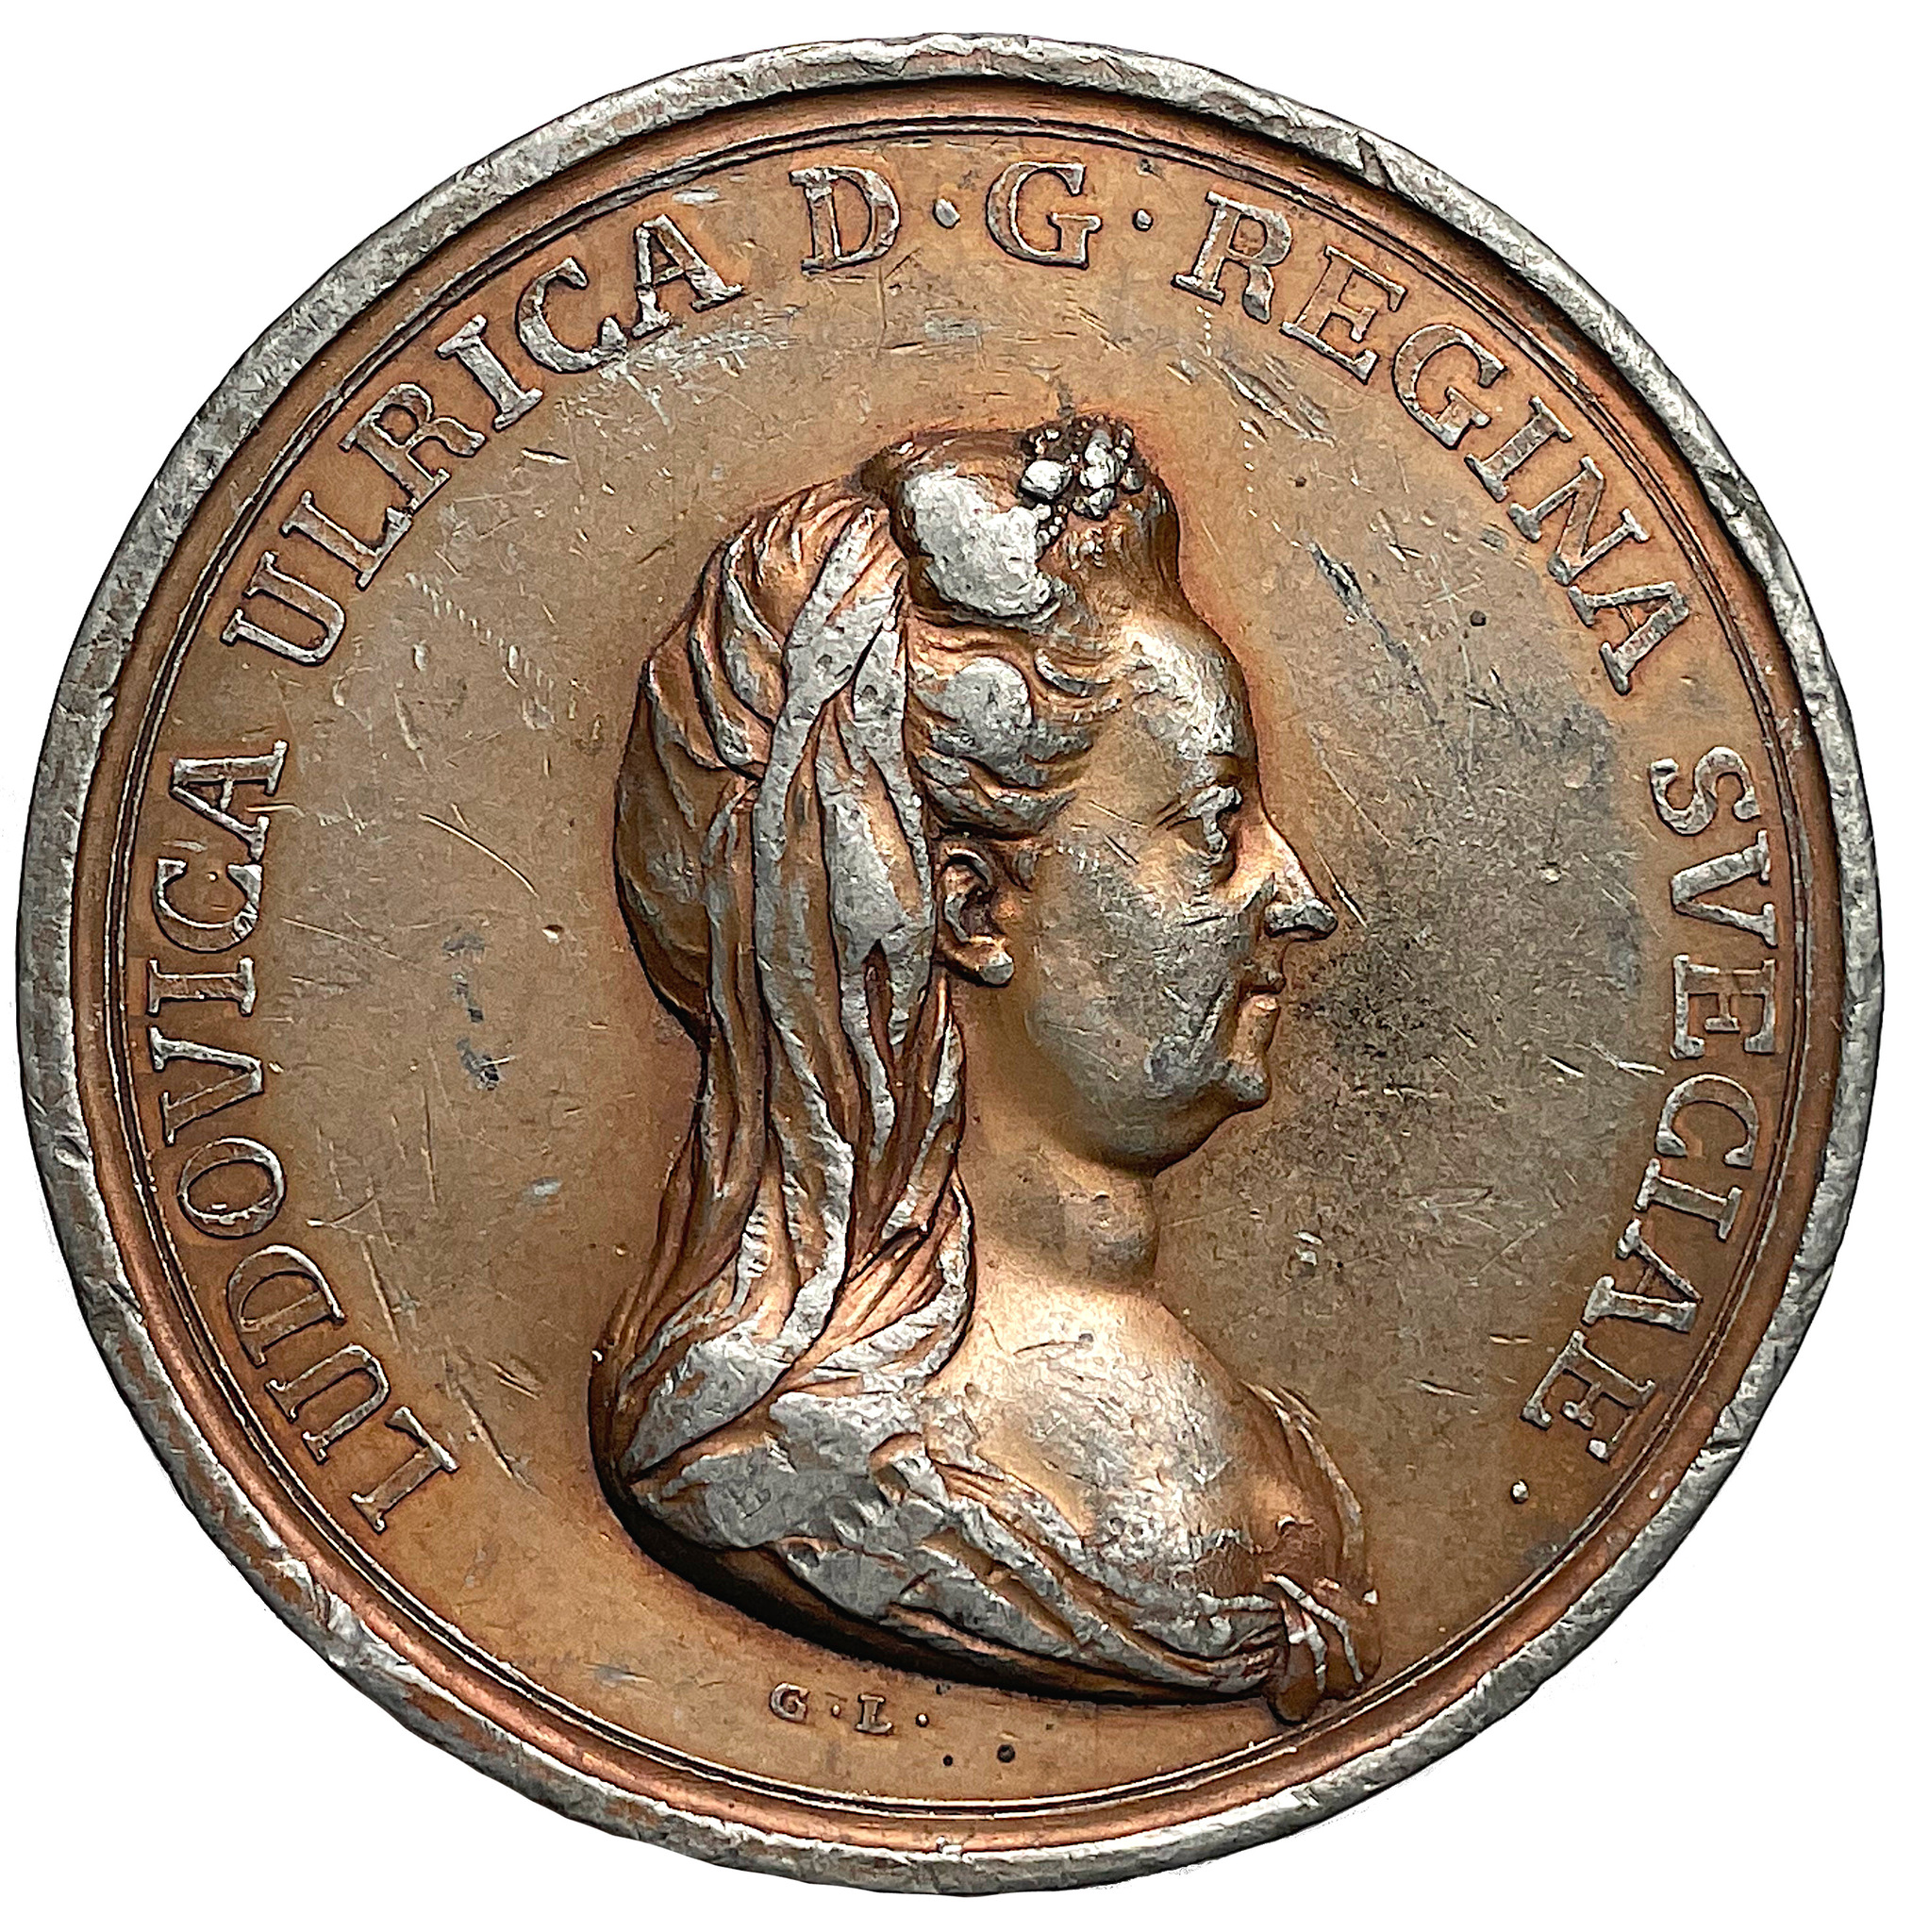 Drottning Lovisa Ulrikas död 1782 av Gustav Ljungberger - Mycket sällsynt